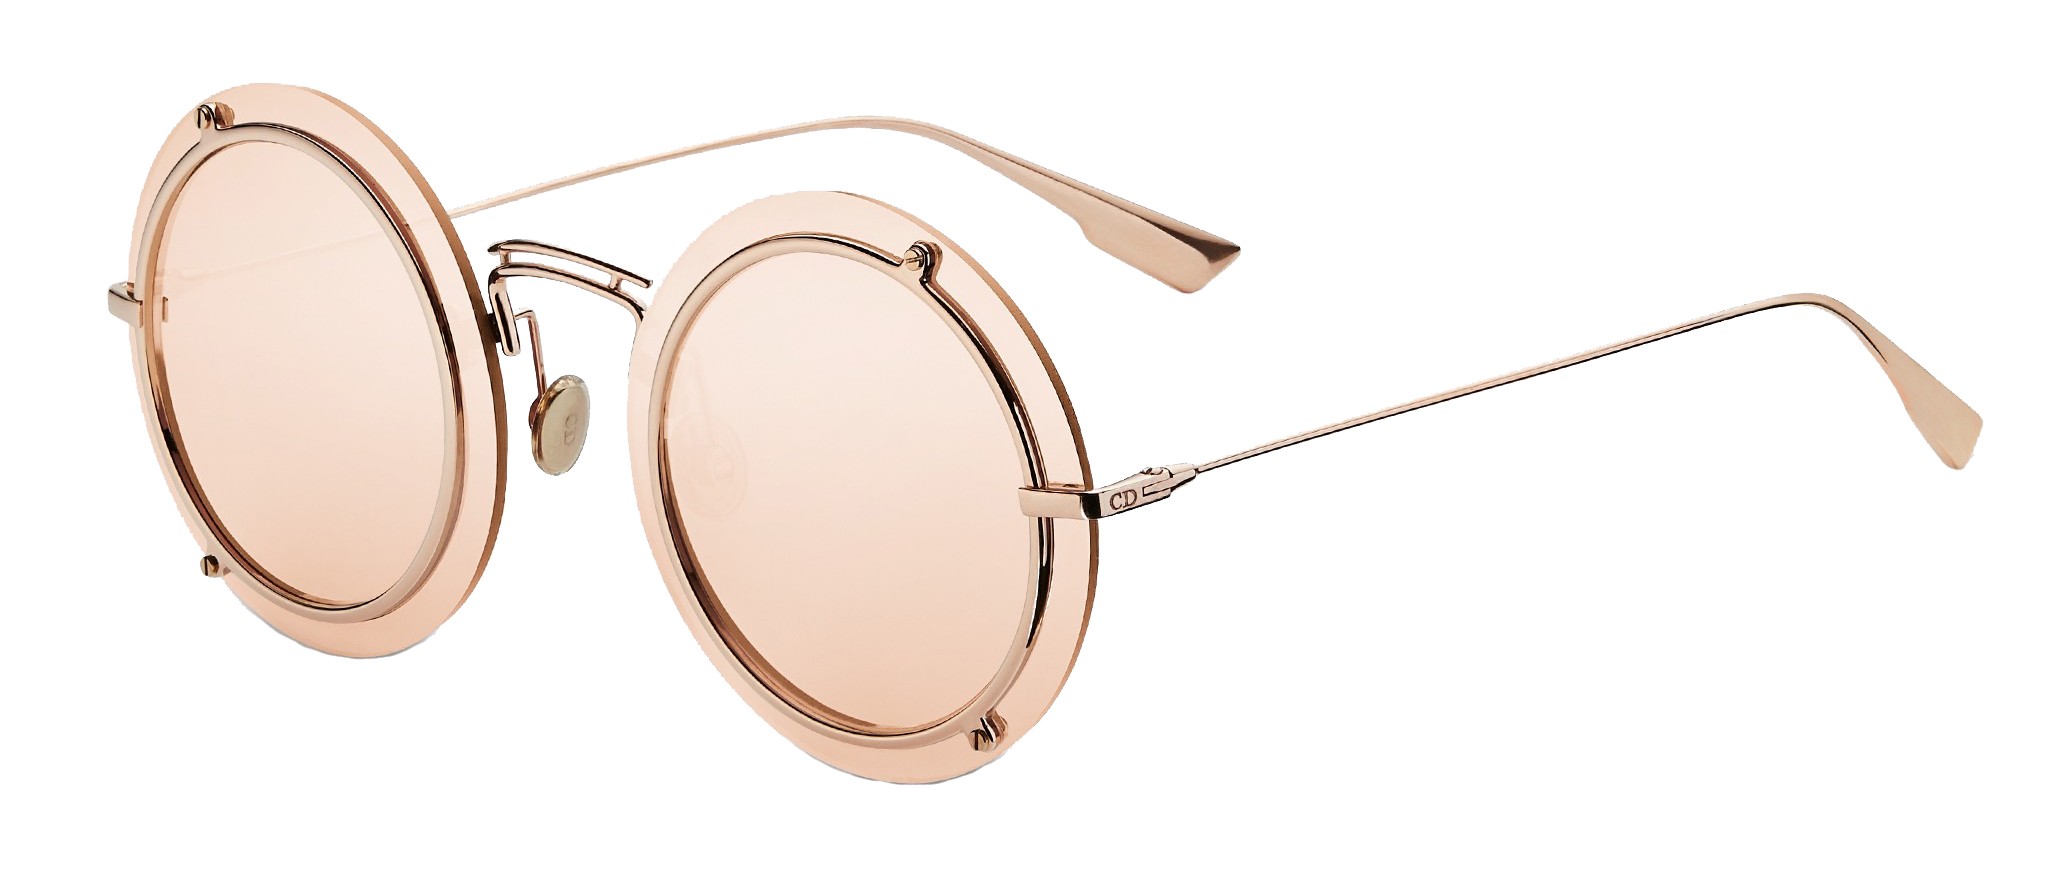 dior sunglasses round frame